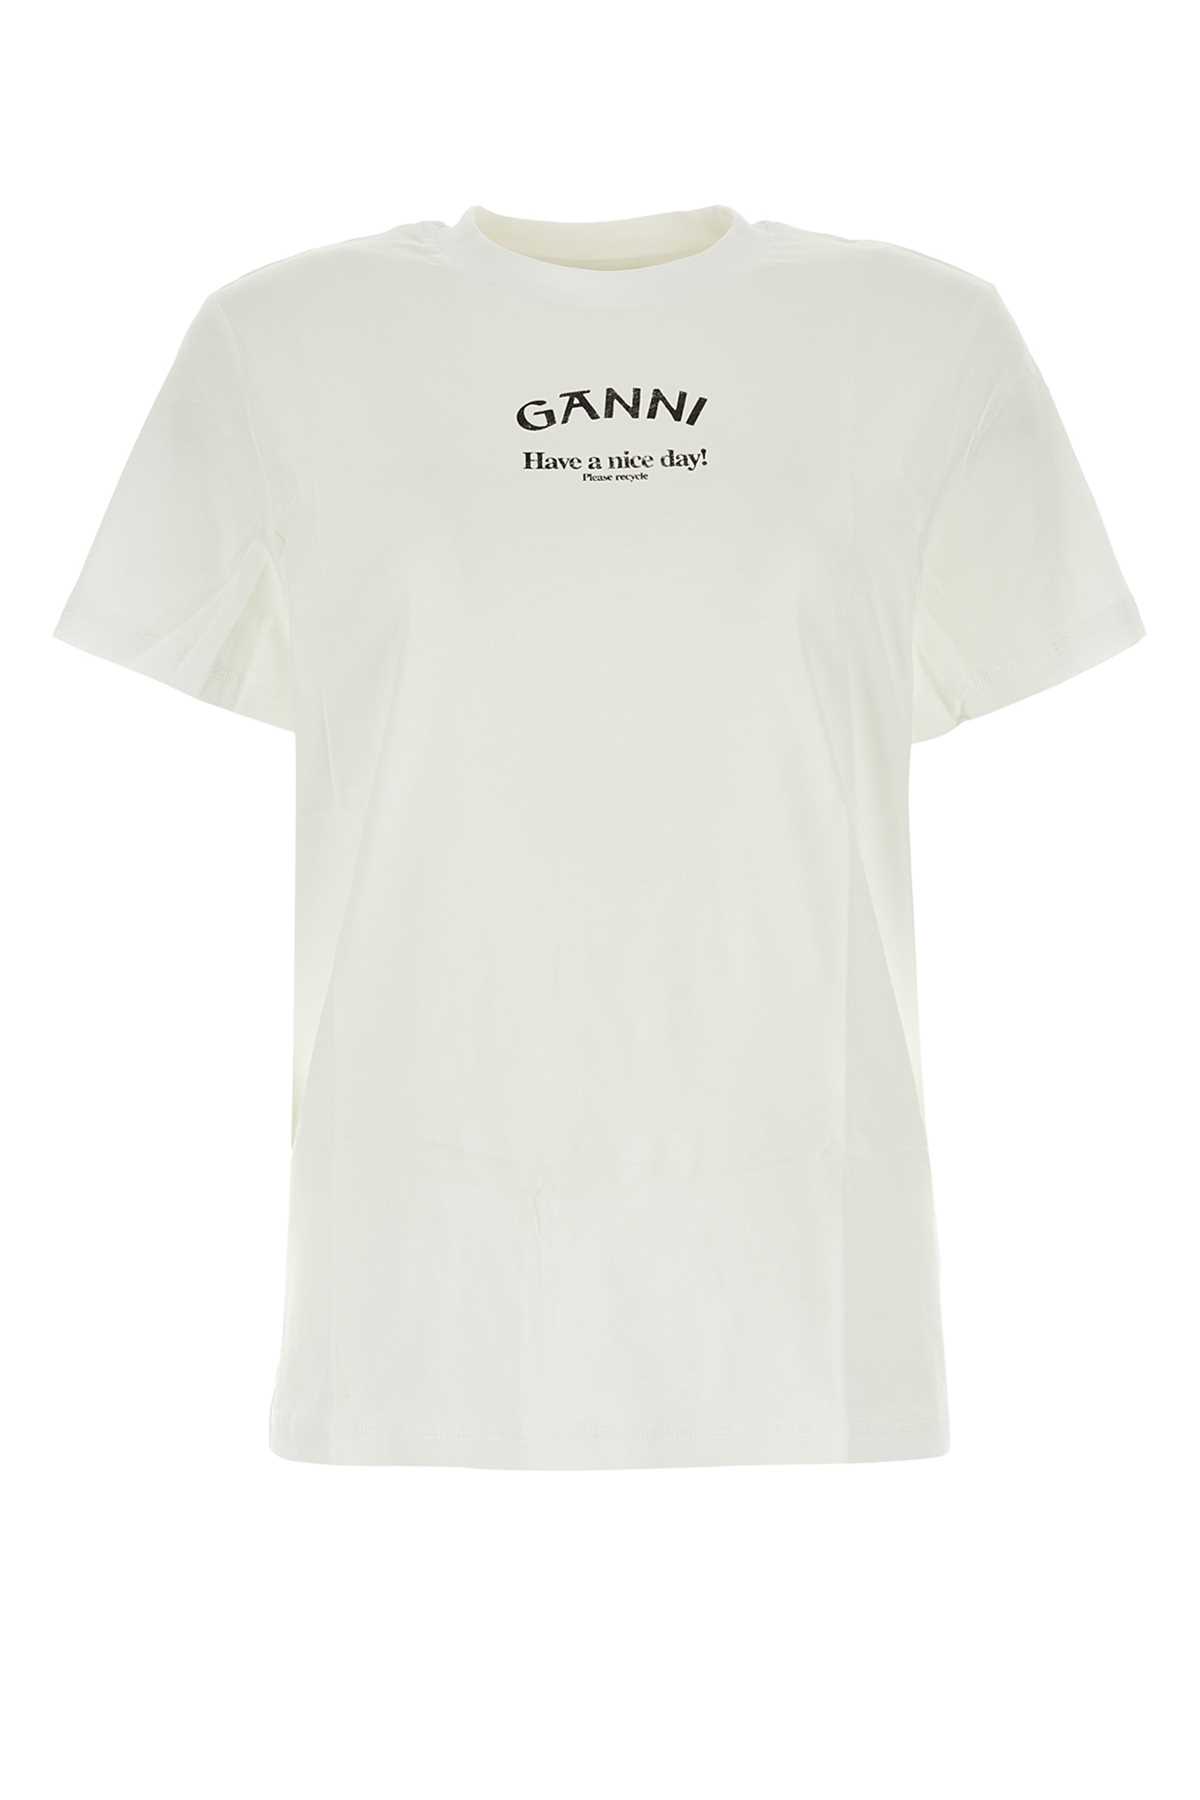 Ganni White Cotton T-shirt In Brightwhite